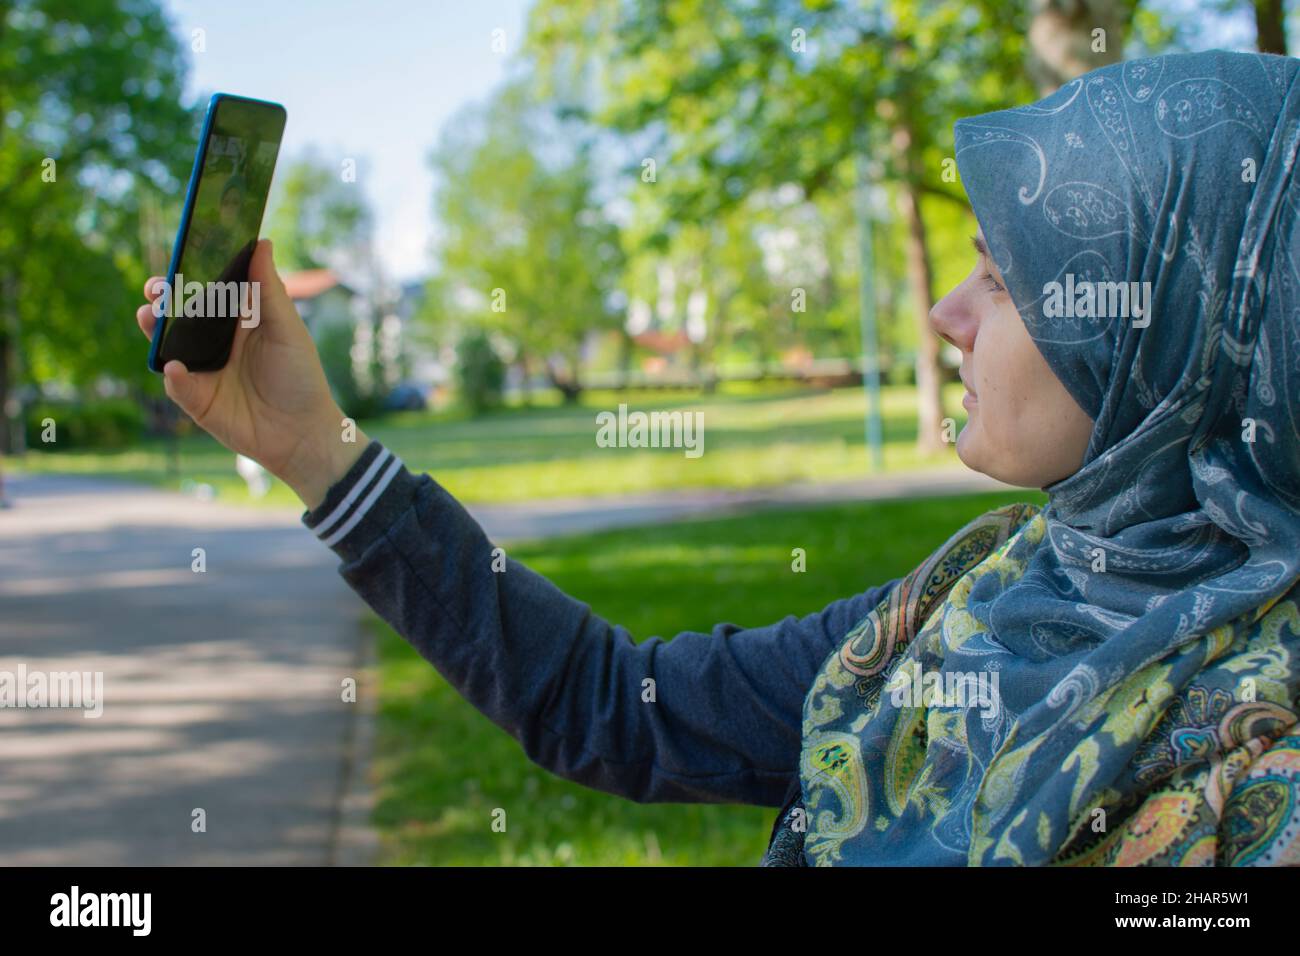 Muslimische Schwangerin, die mit dem Smartphone Selfie im Park nimmt Stockfoto